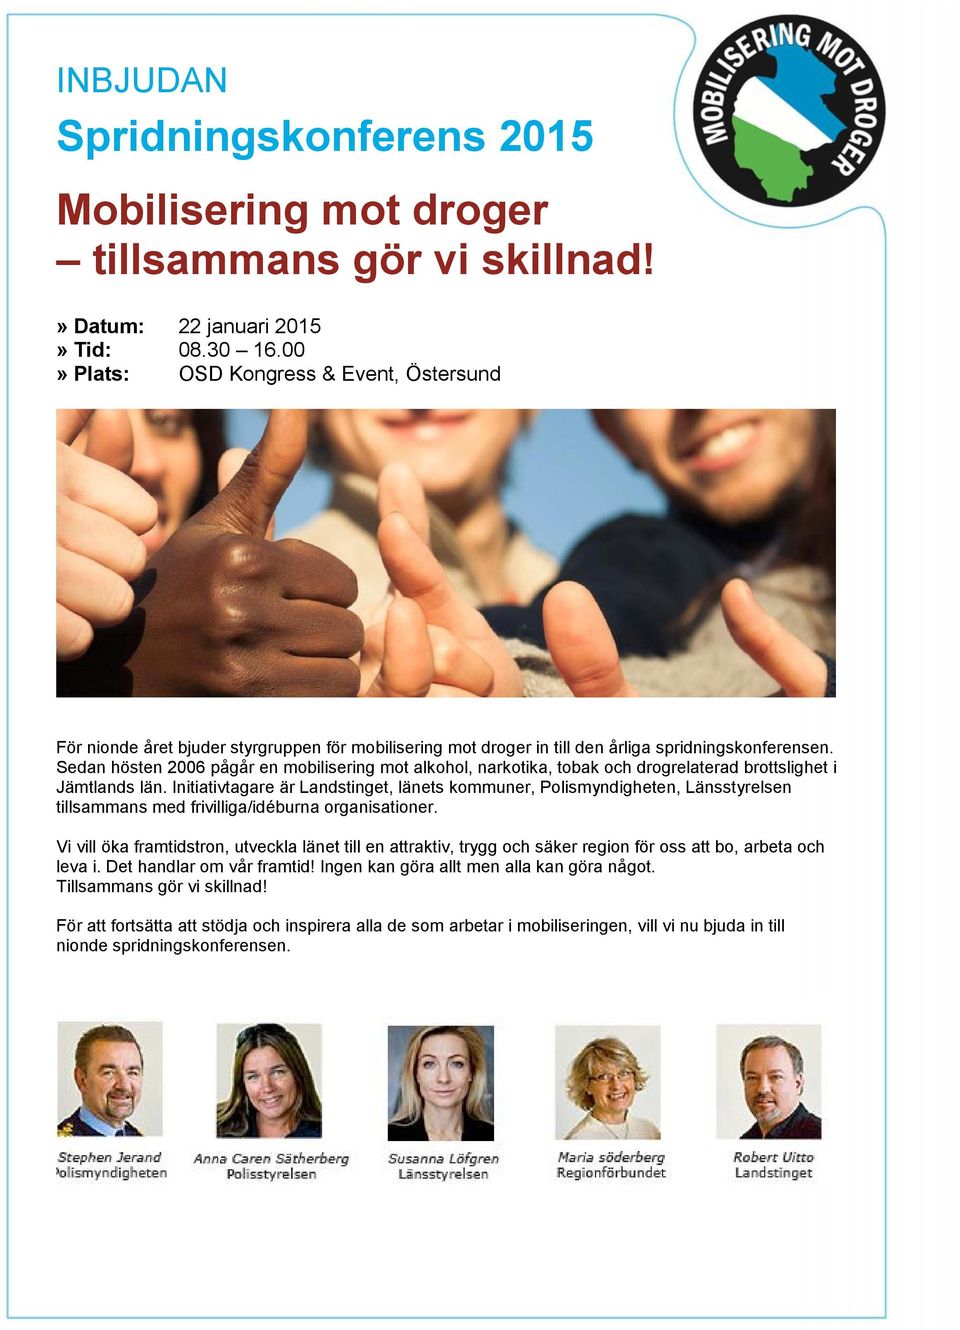 Sedan hösten 2006 pågår en mobilisering mot alkohol, narkotika, tobak och drogrelaterad brottslighet i Jämtlands län.